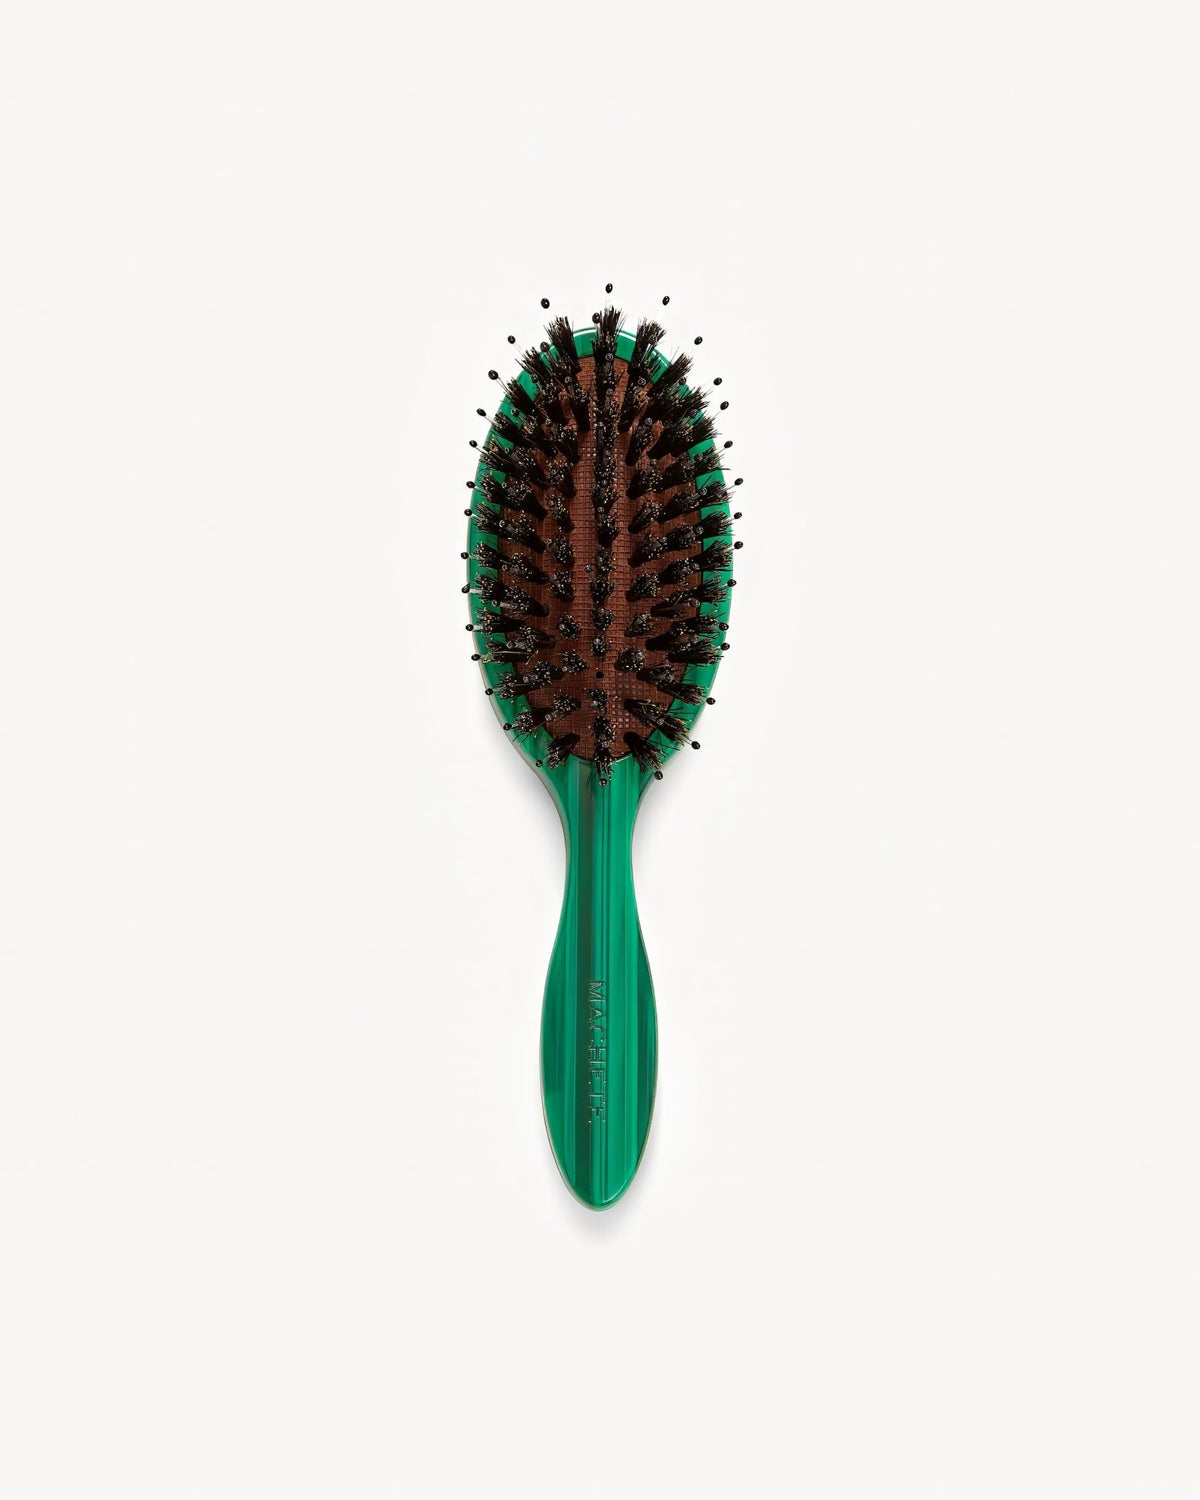 MACHETE Petite Travel Hair Brush in Malachite